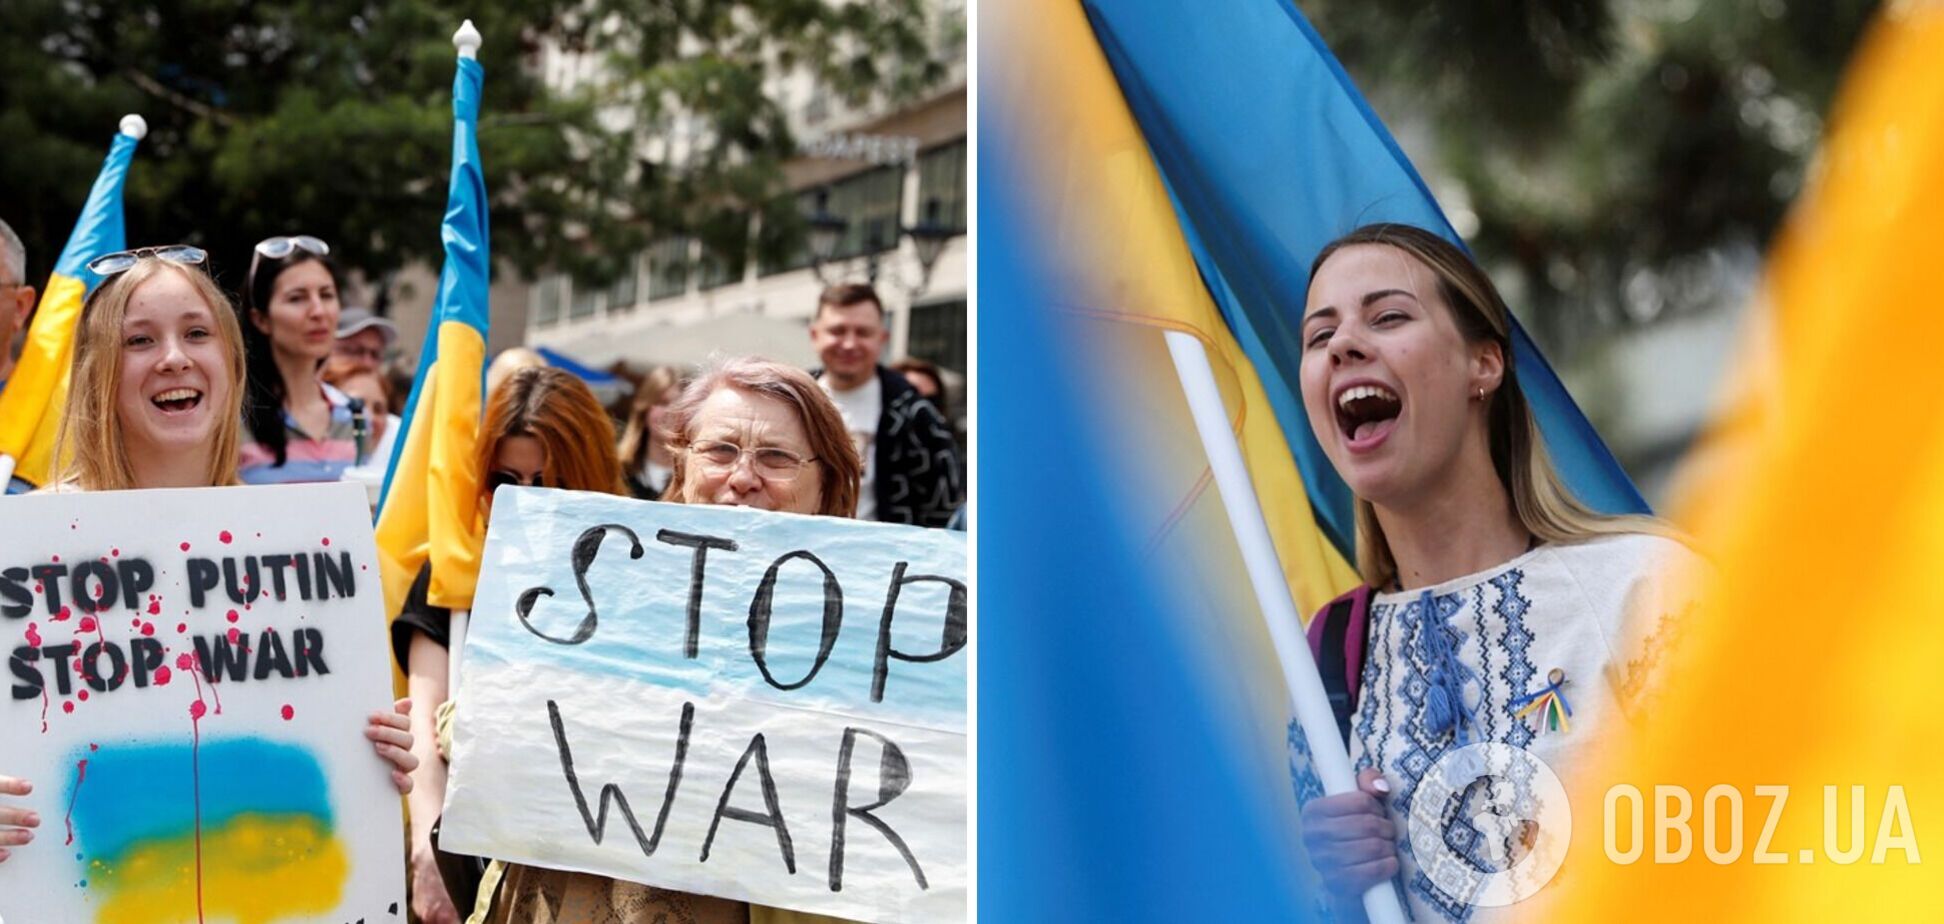 'Зупиніть Путіна': у Будапешті відбулася антивоєнна акція на підтримку України. Фото